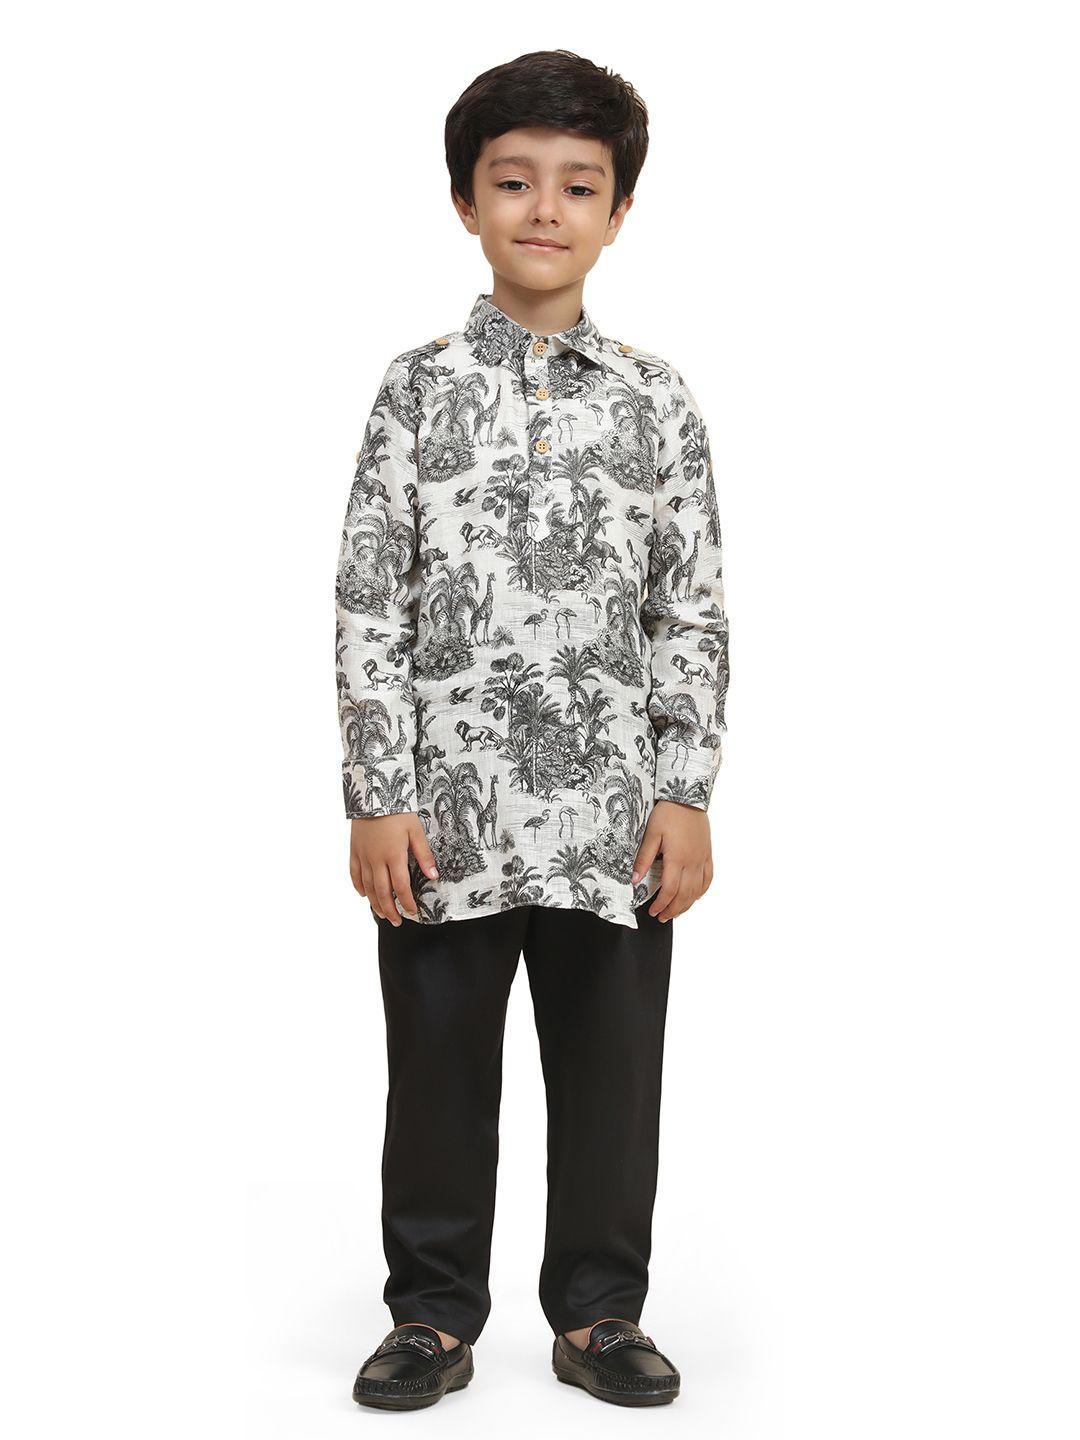 baesd-boys-floral-printed-shirt-collar-regular-kurta-with-pyjamas